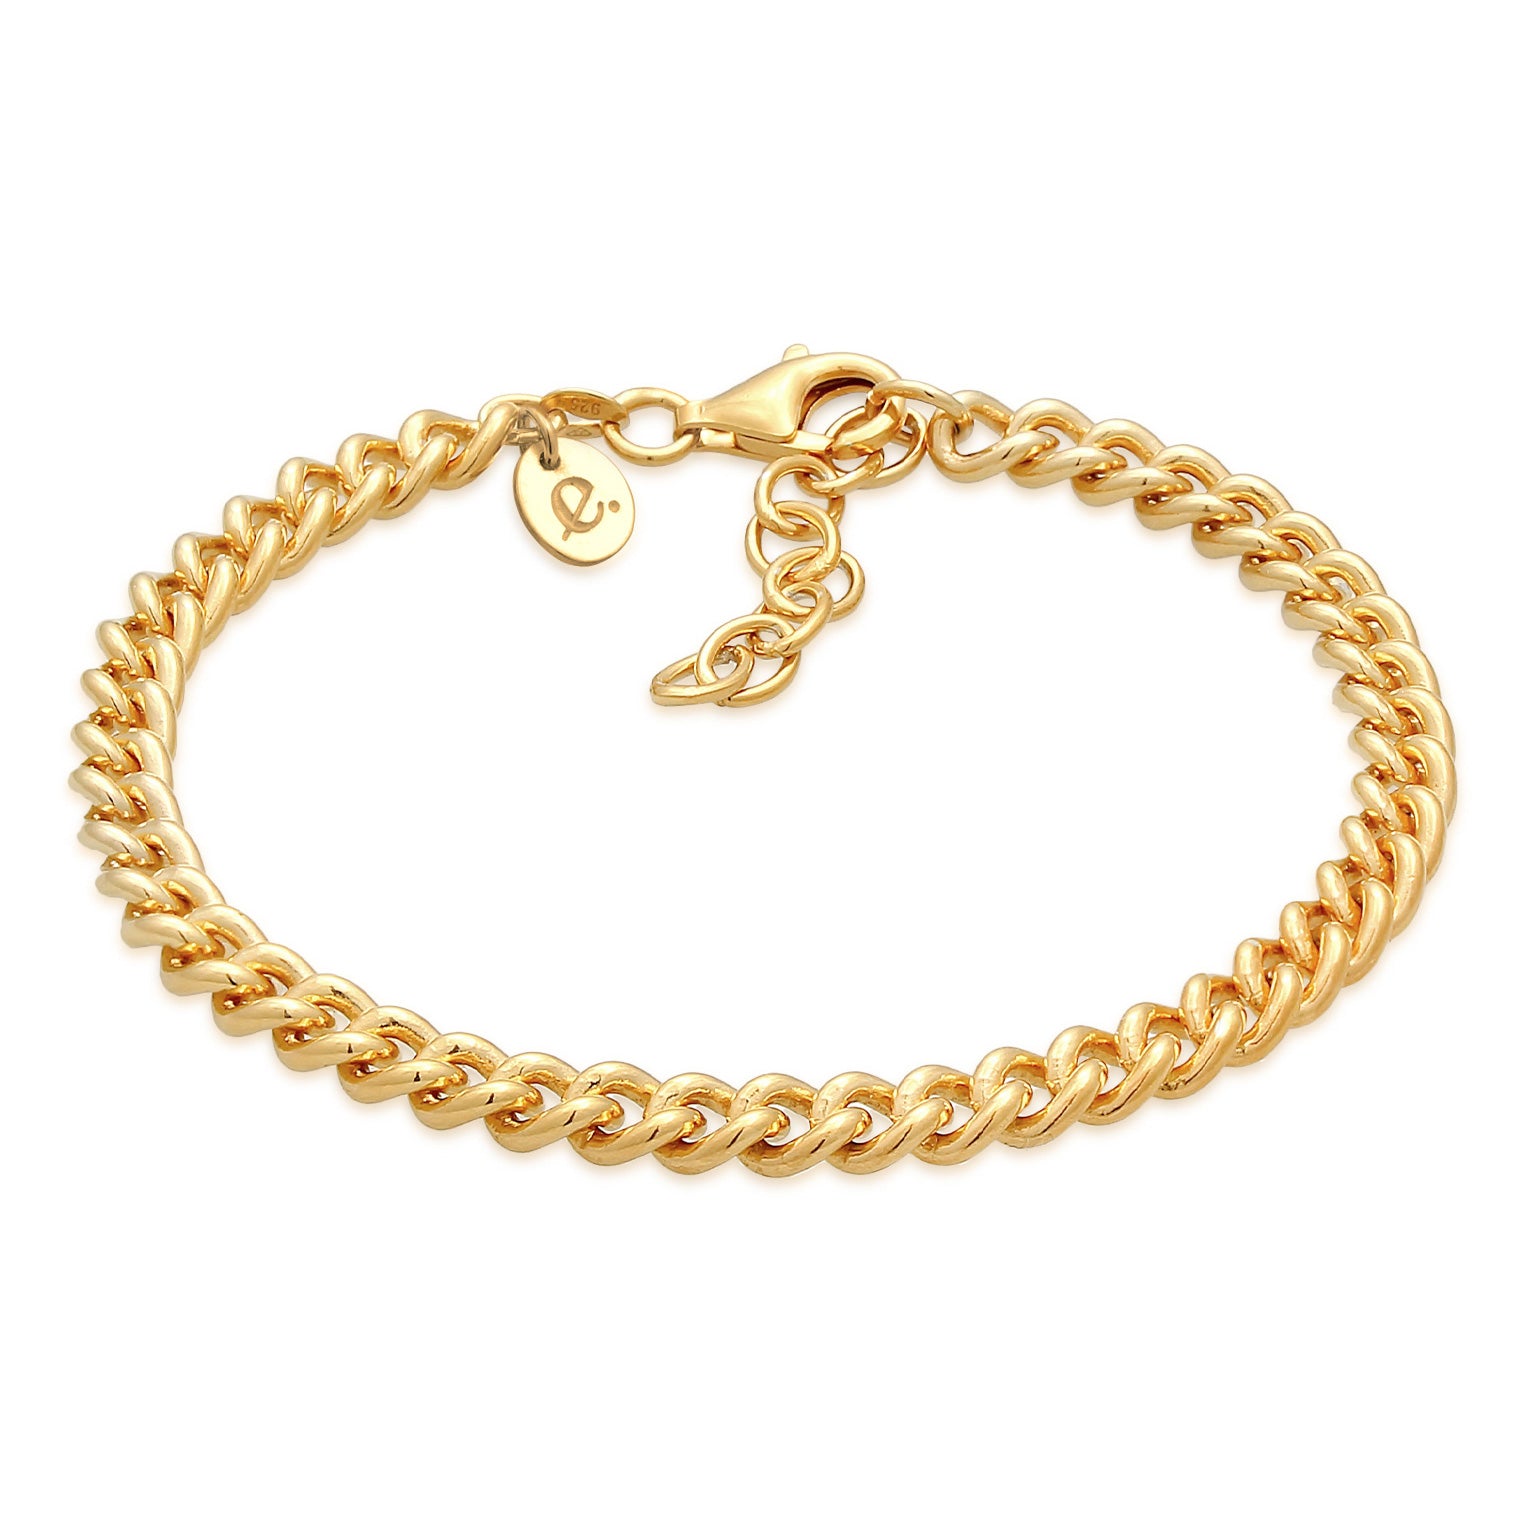 Jewelry Armbänder – im Elli Online-Shop kaufen Elli von